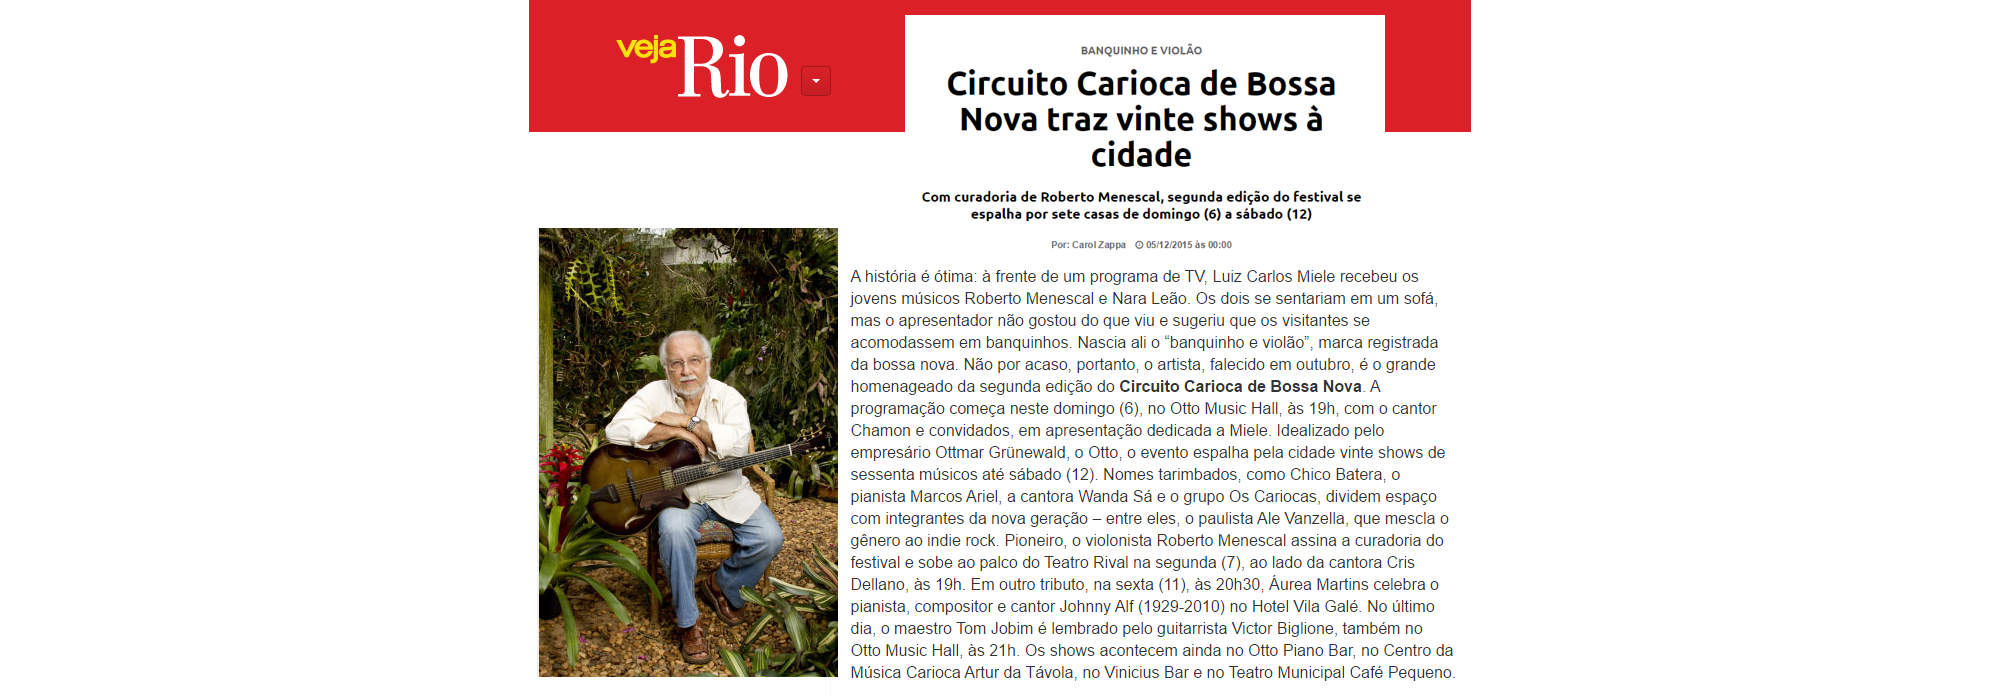 imprensa-circuito-carioca-de-bossa-nova-2015-02